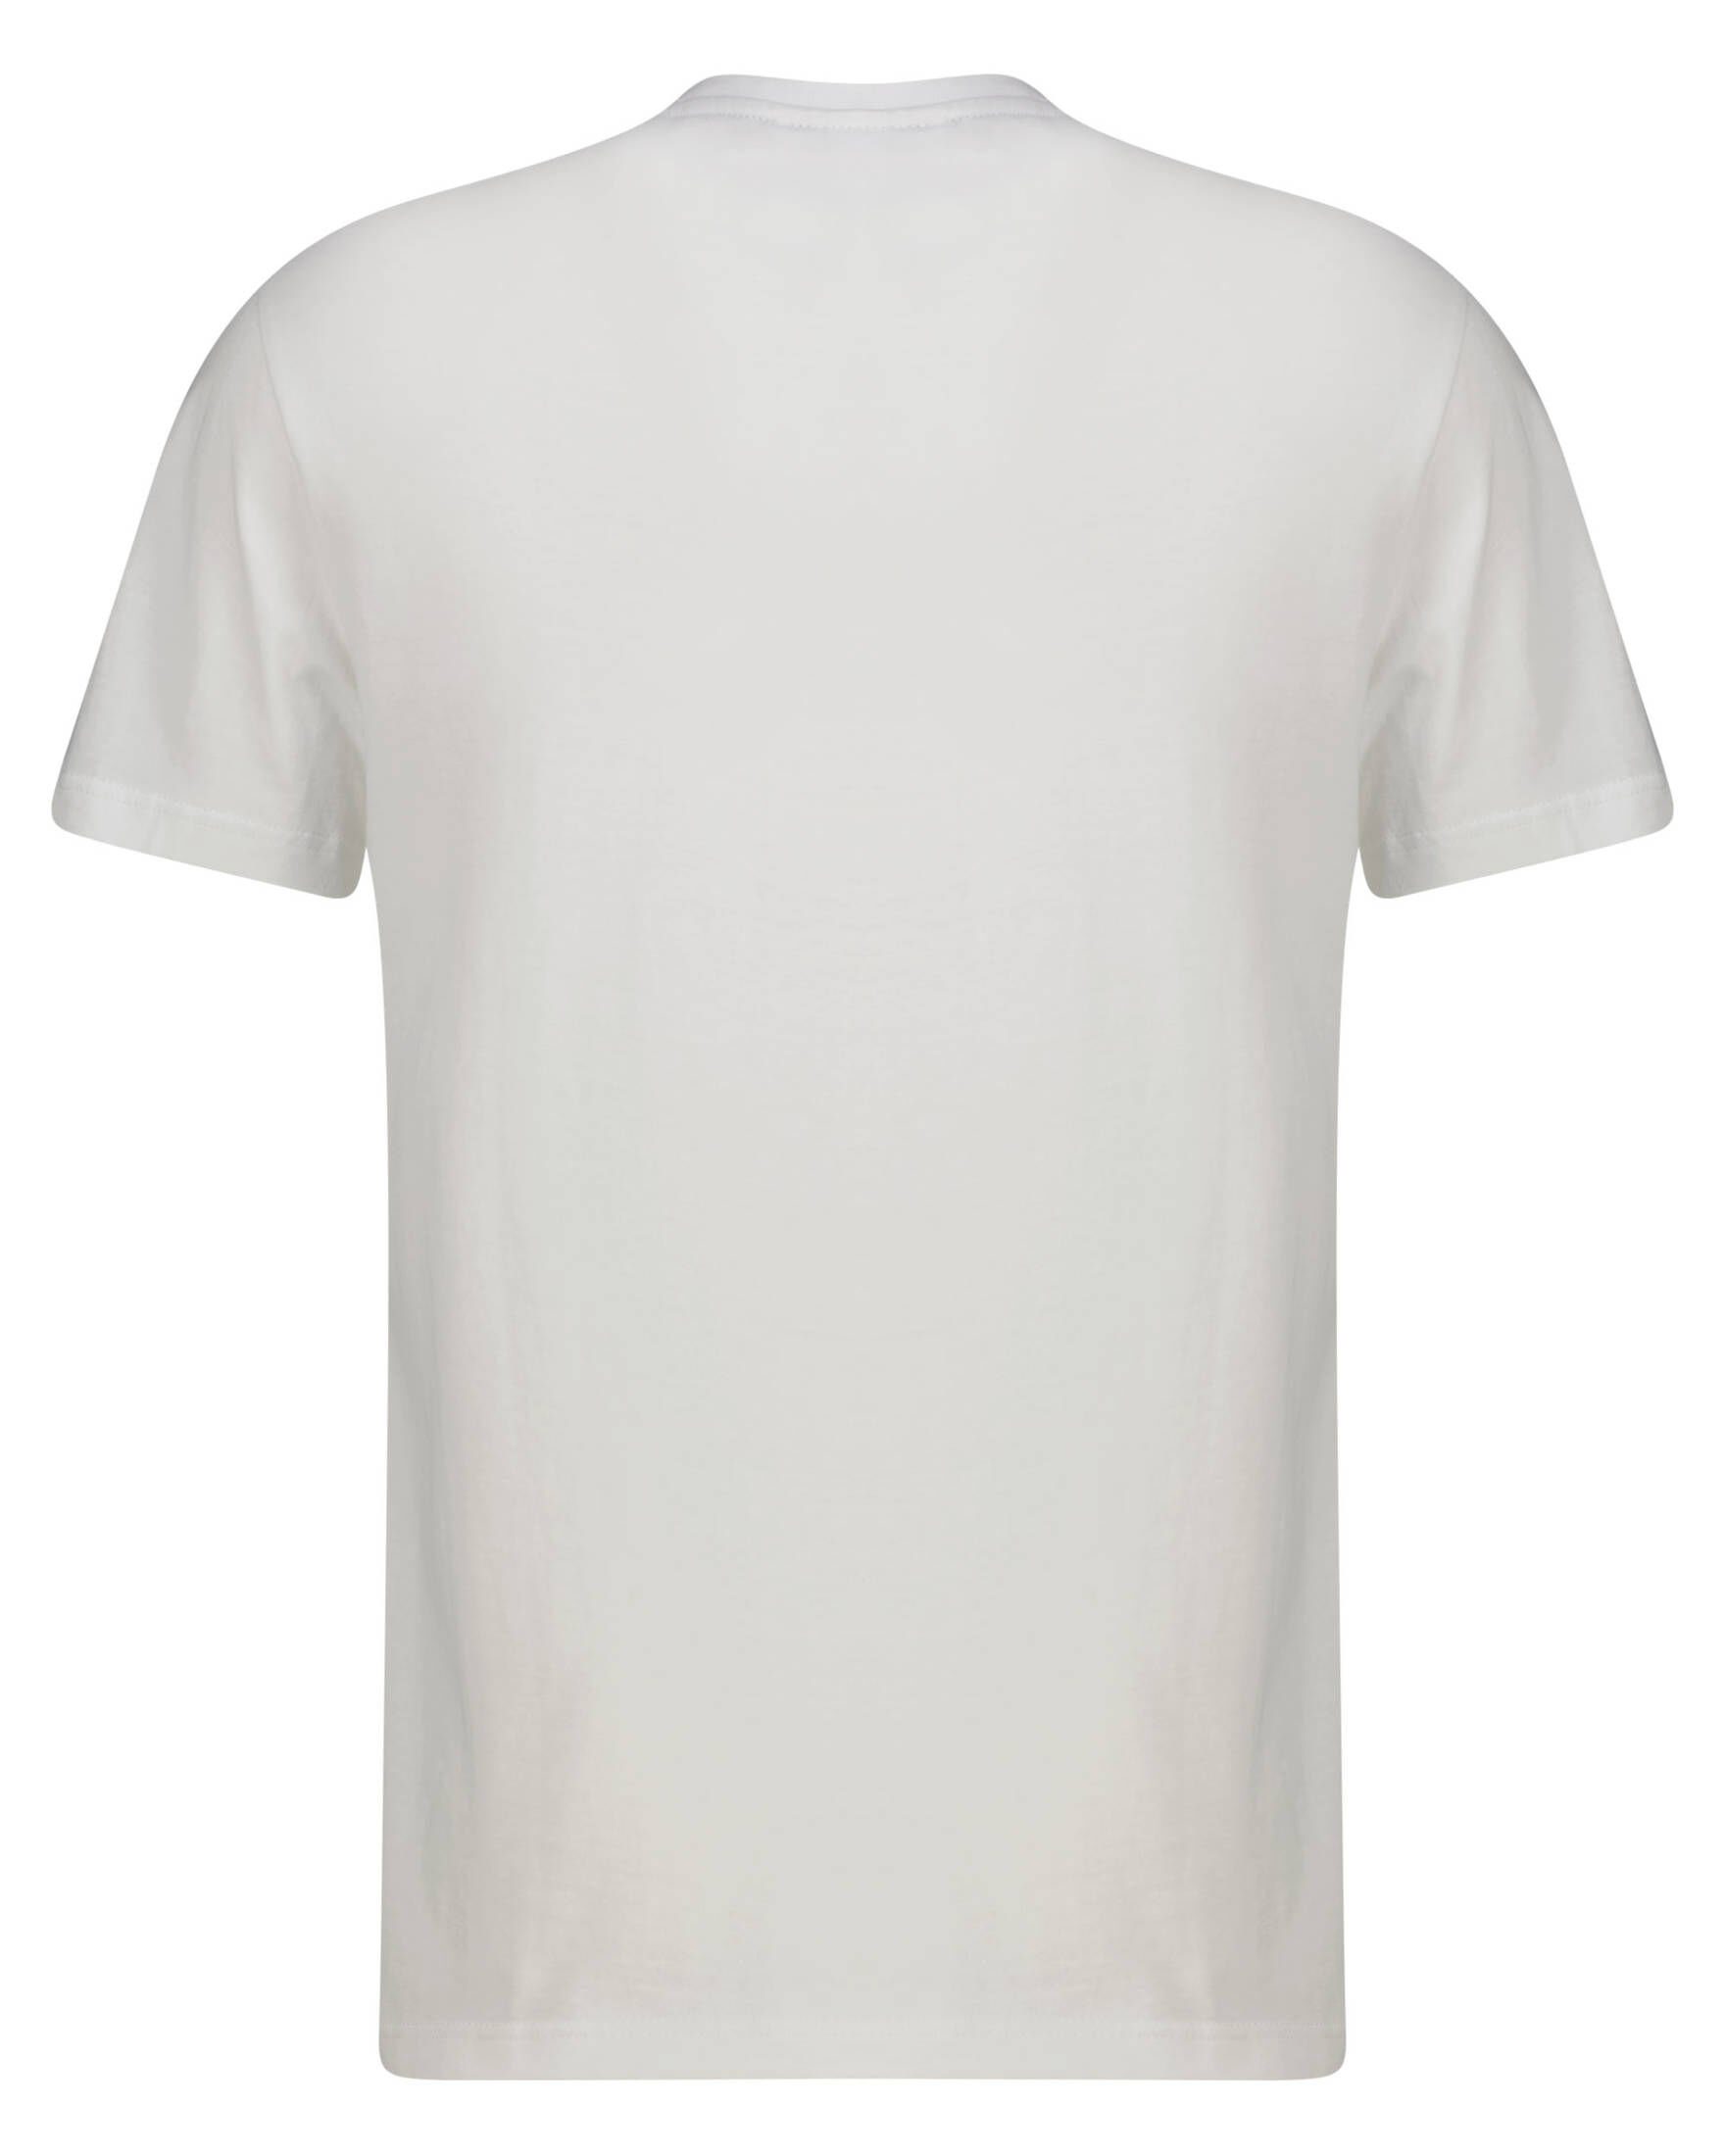 Lacoste T-Shirt mit beschriftetem Kontrastband an den Schultern, Aus  angenehmer Baumwollqualität